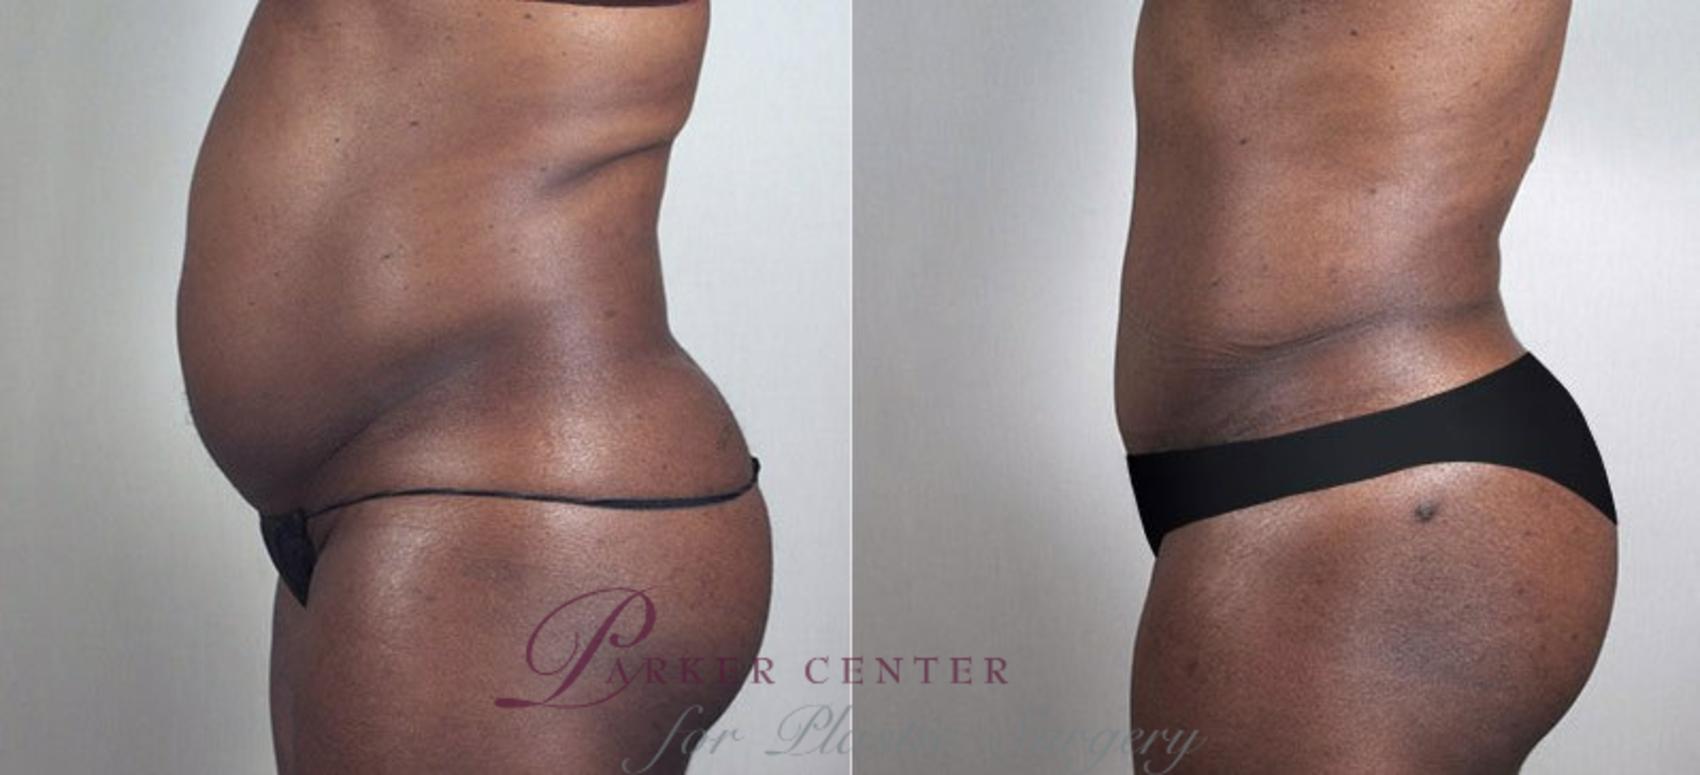 Liposuction Case 729 Before & After View #2 | Paramus, NJ | Parker Center for Plastic Surgery